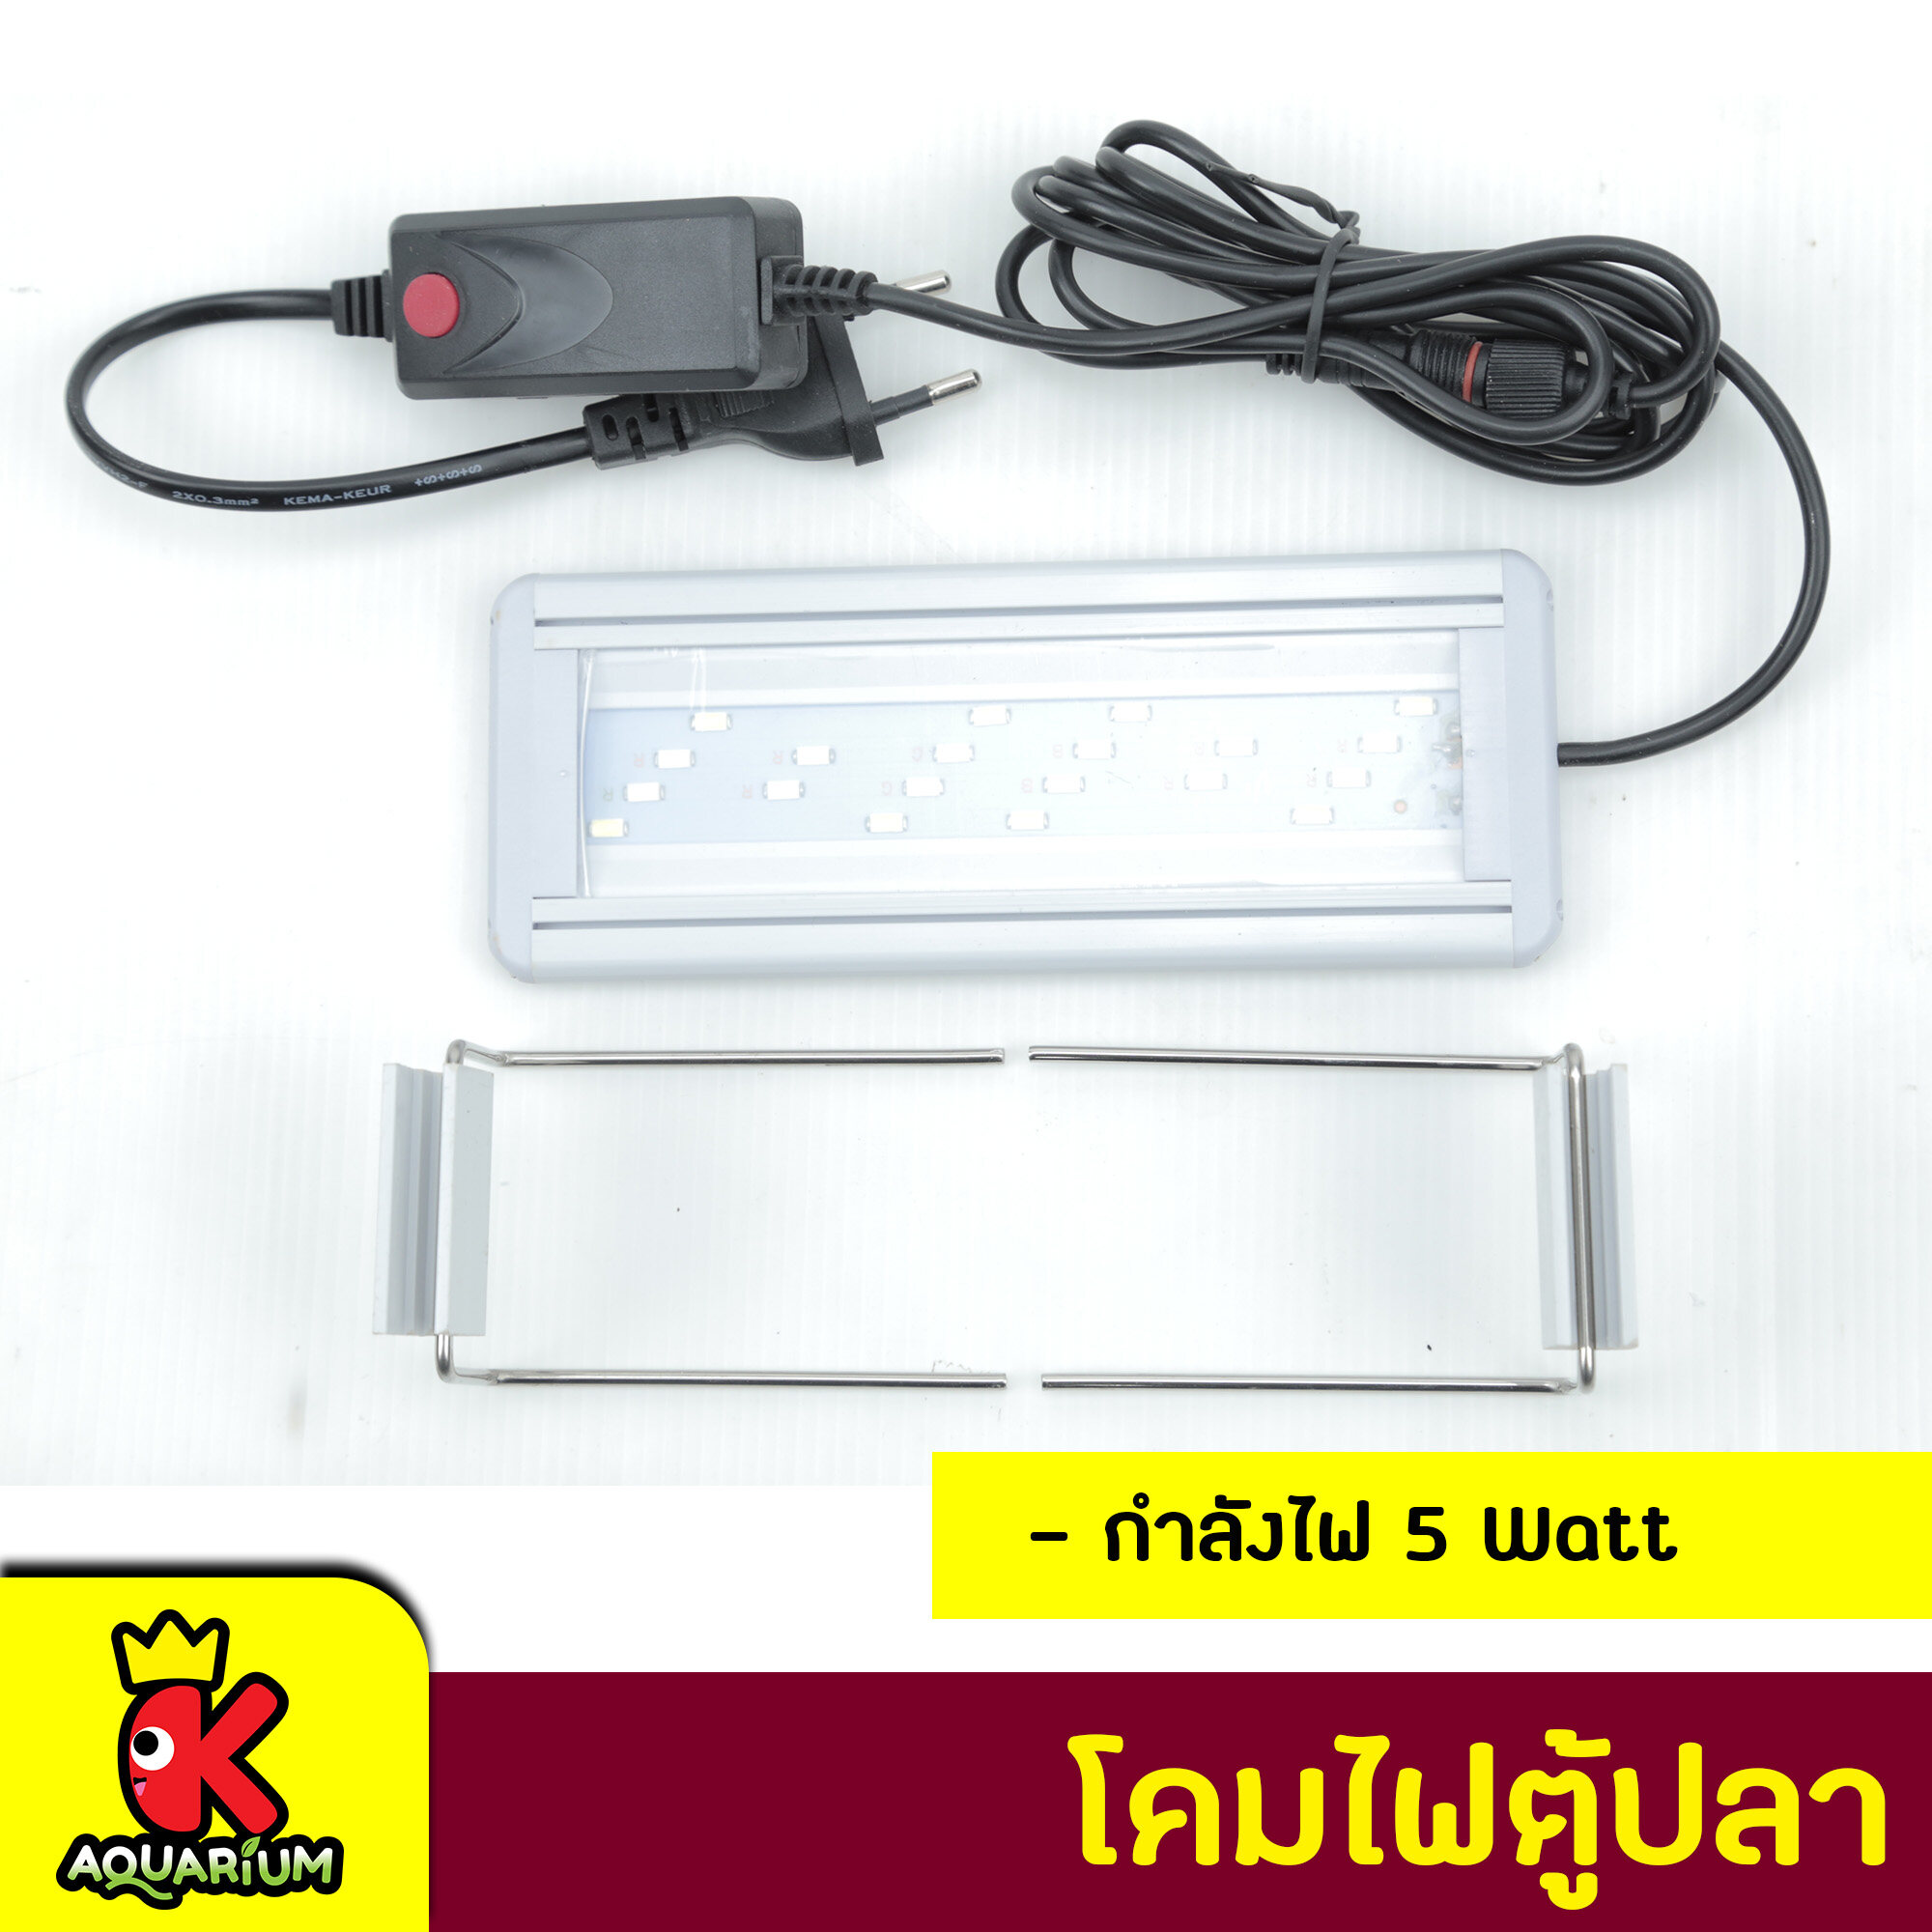 โคมไฟตู้ปลา COLORFUL LED สำหรับตู้ปลา ปรับแสงไฟได้ 3 แบบ  รุ่น GX-A200